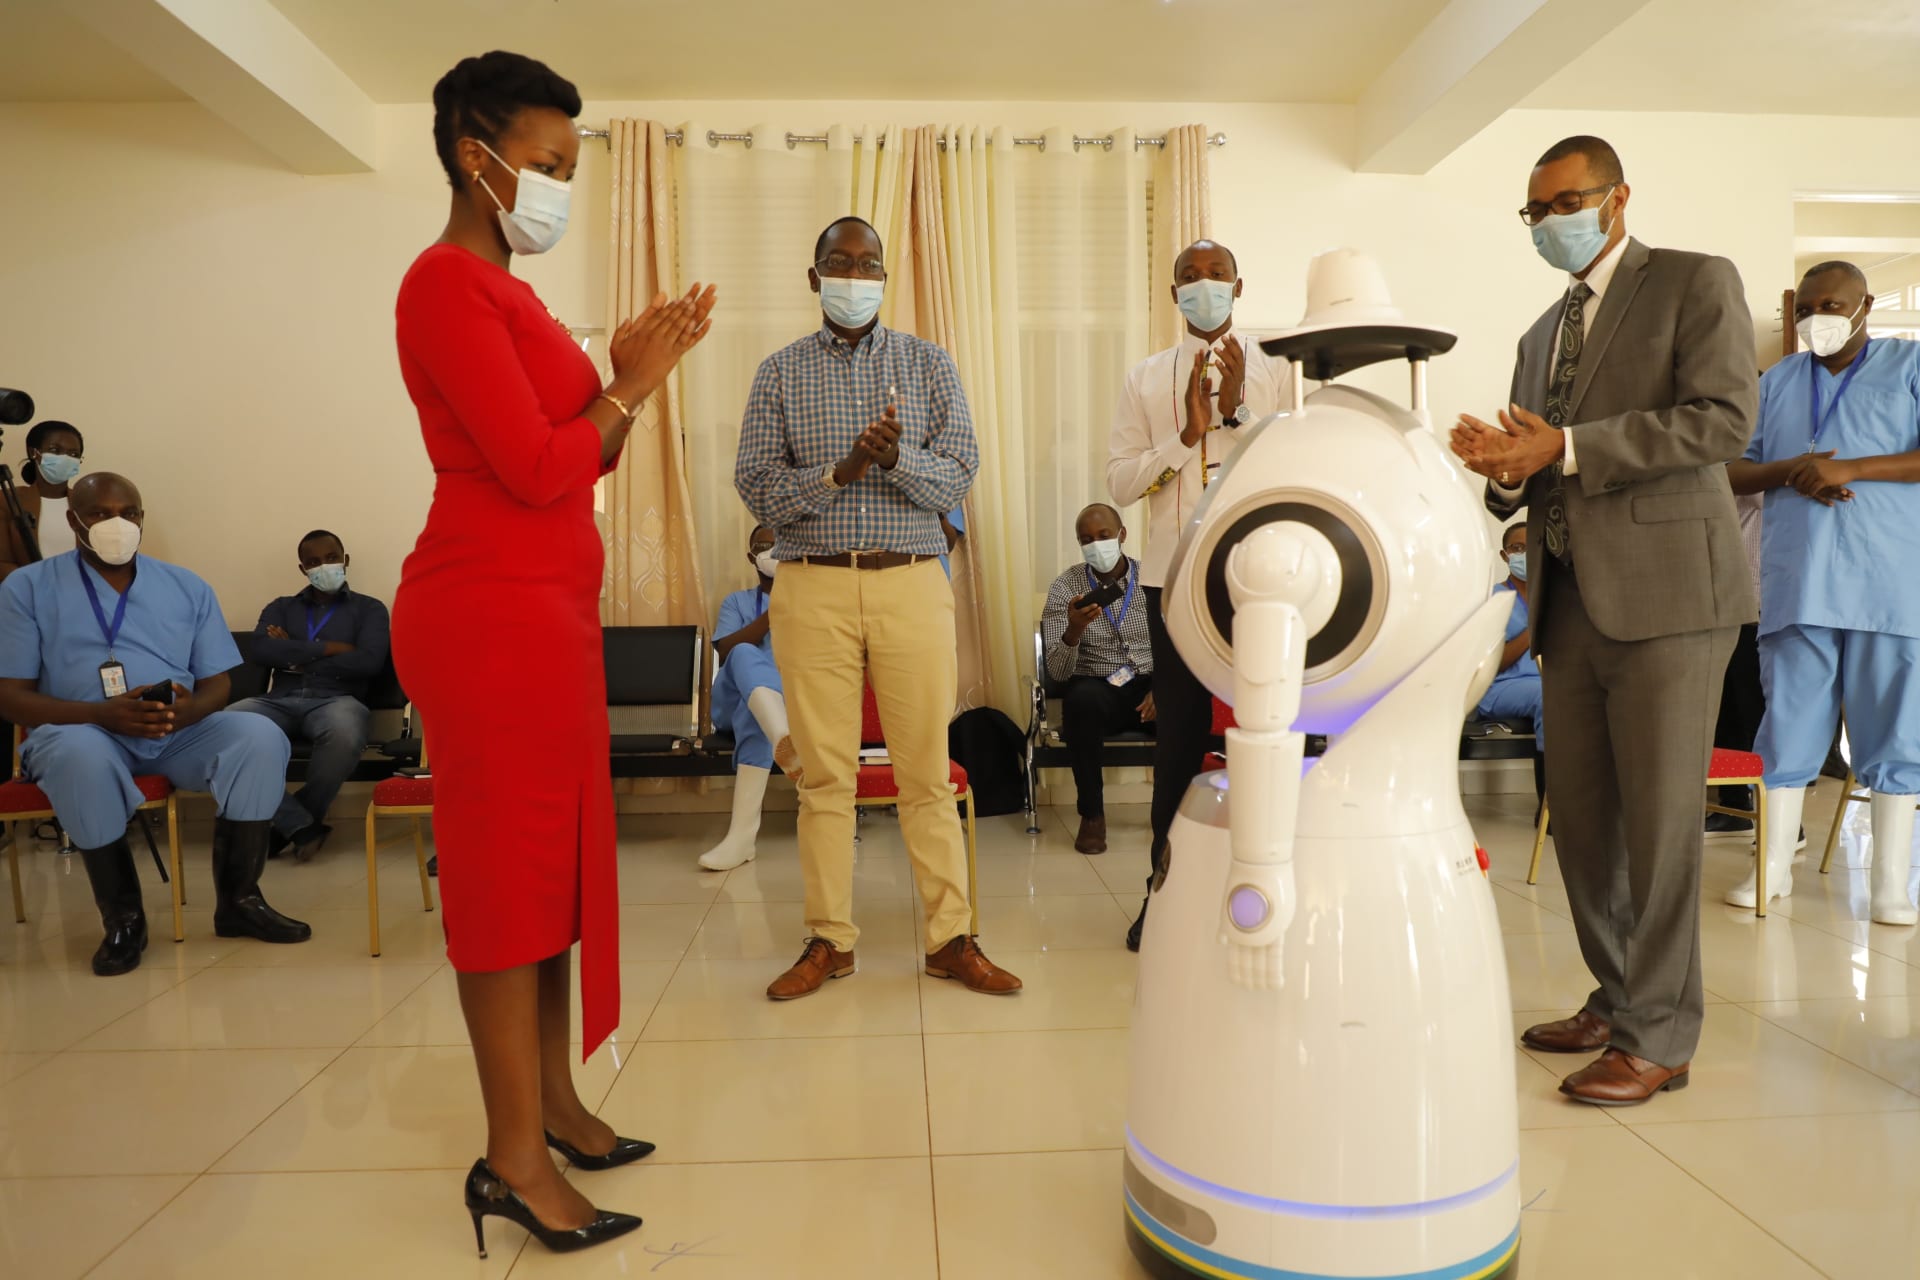 Roboti pro boj s koronavirovou nákazou během představení ve Rwandě (zdroj: Twitter / Rwanda Ministry of ICT and Innovation)